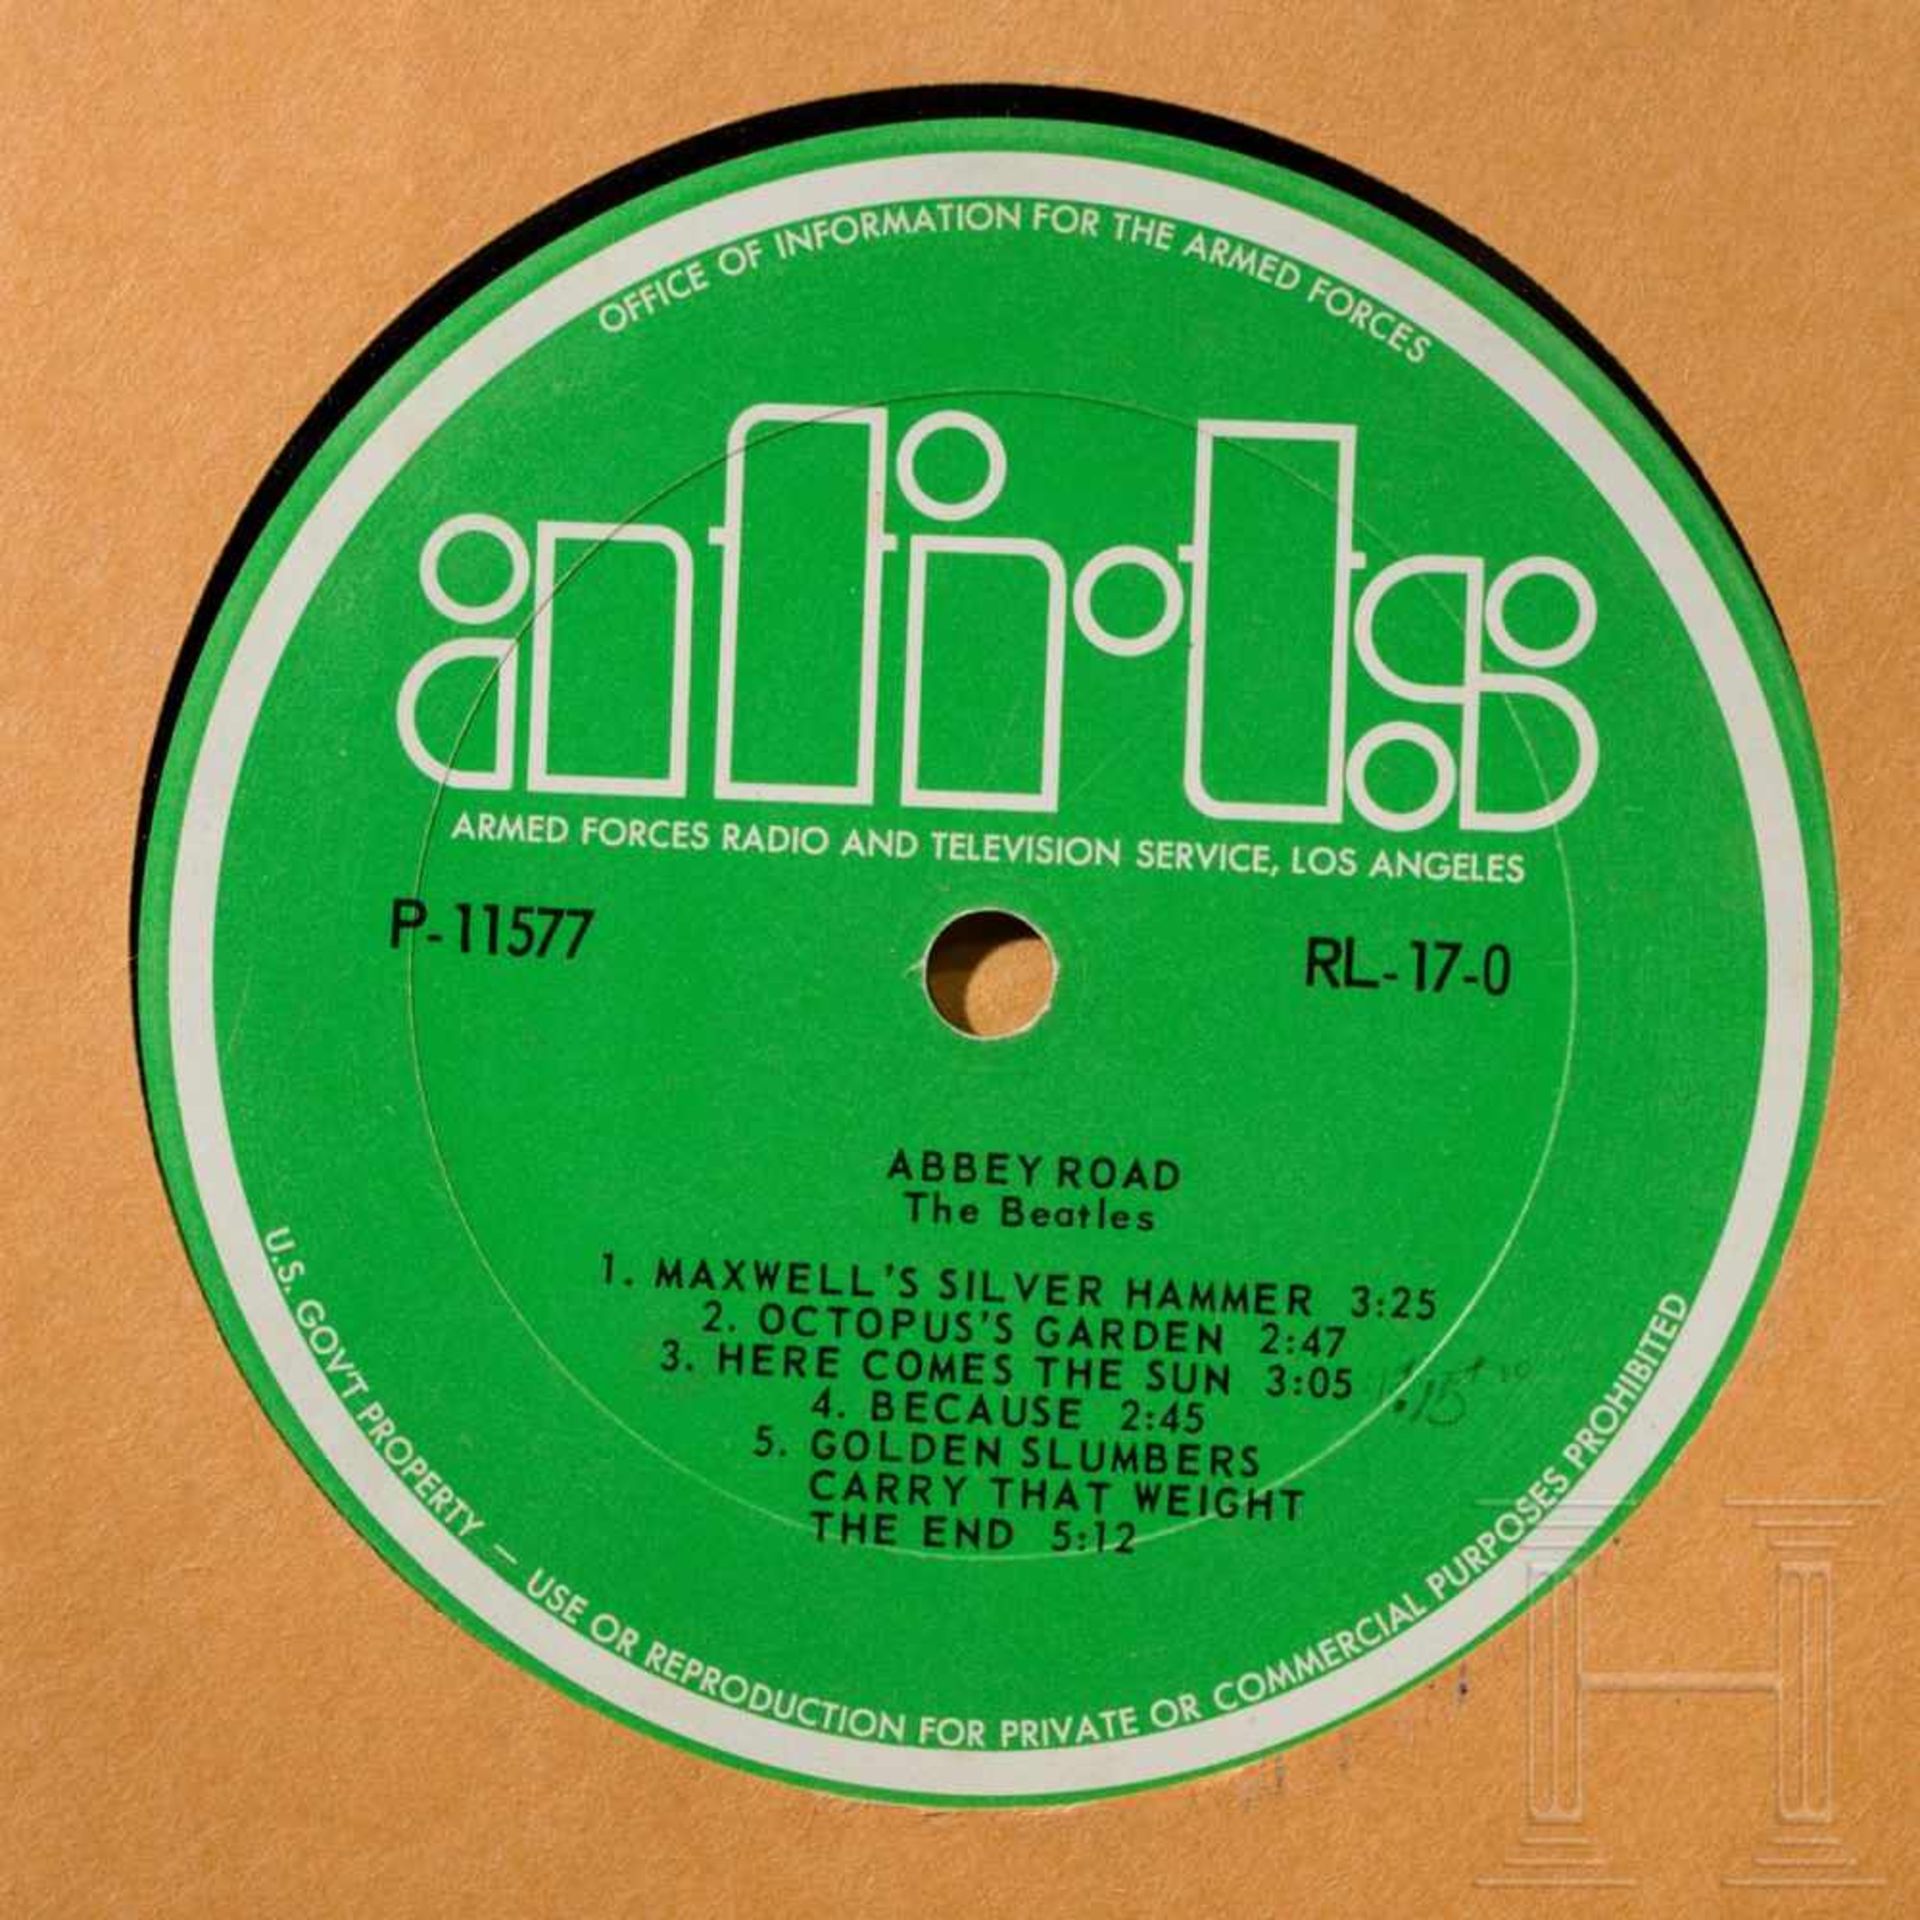 Zehn Schallplatten der AFRTS (Armed Forces Radio & Television Service) - Beatles und weitere - Bild 3 aus 9